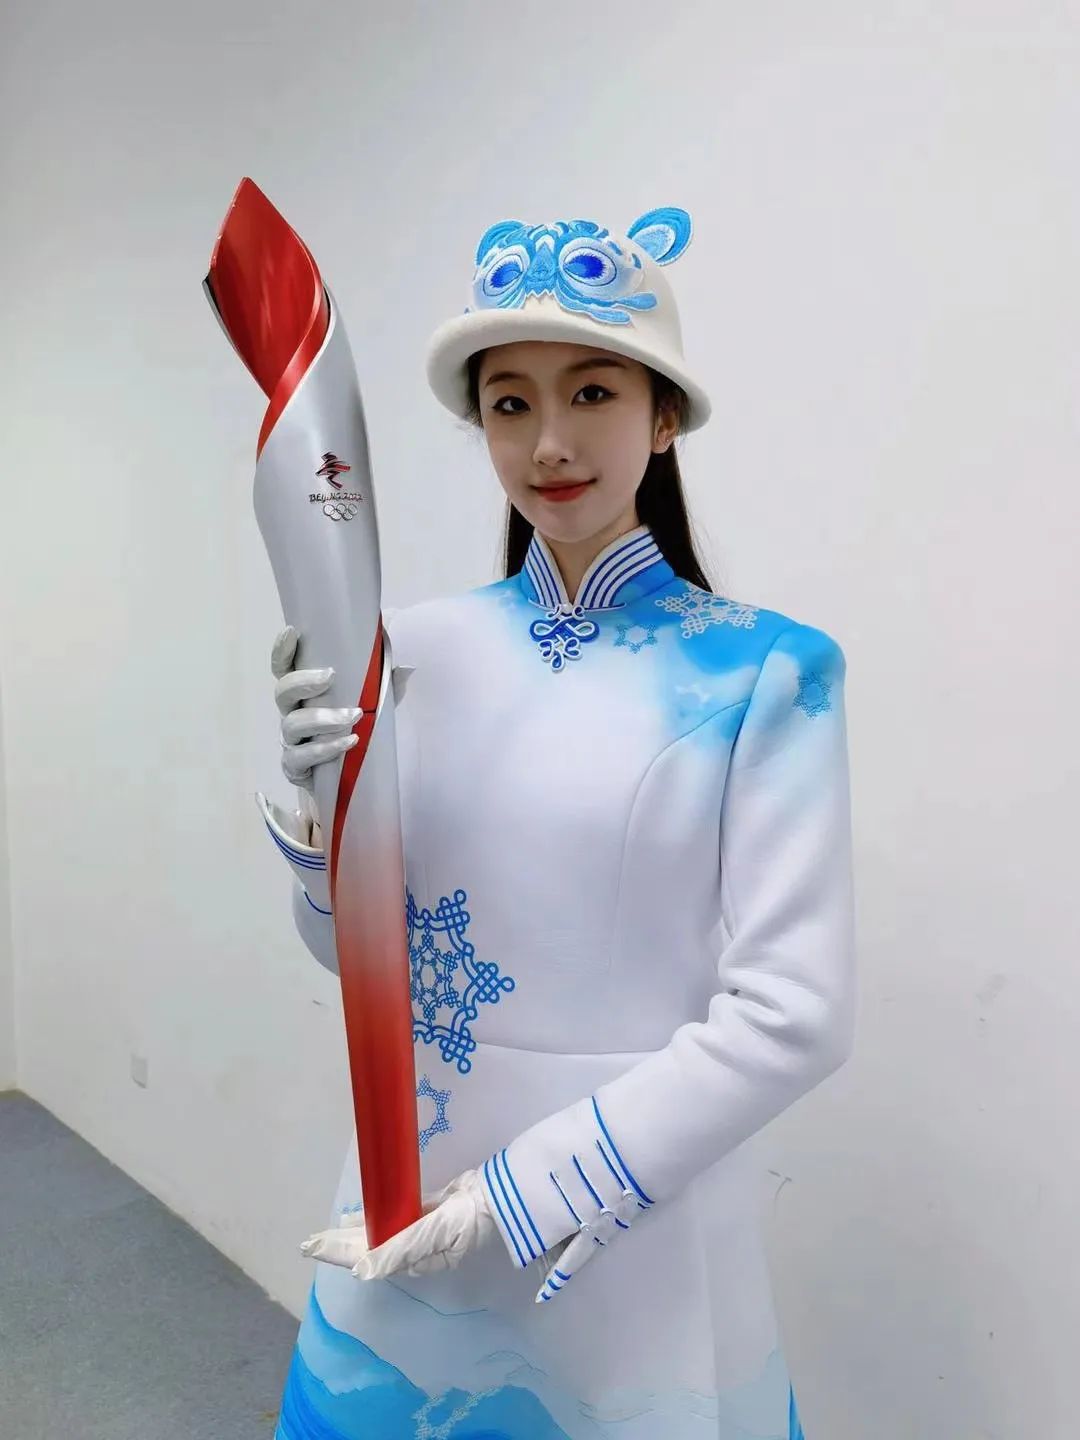 冬奥会2022服装图片